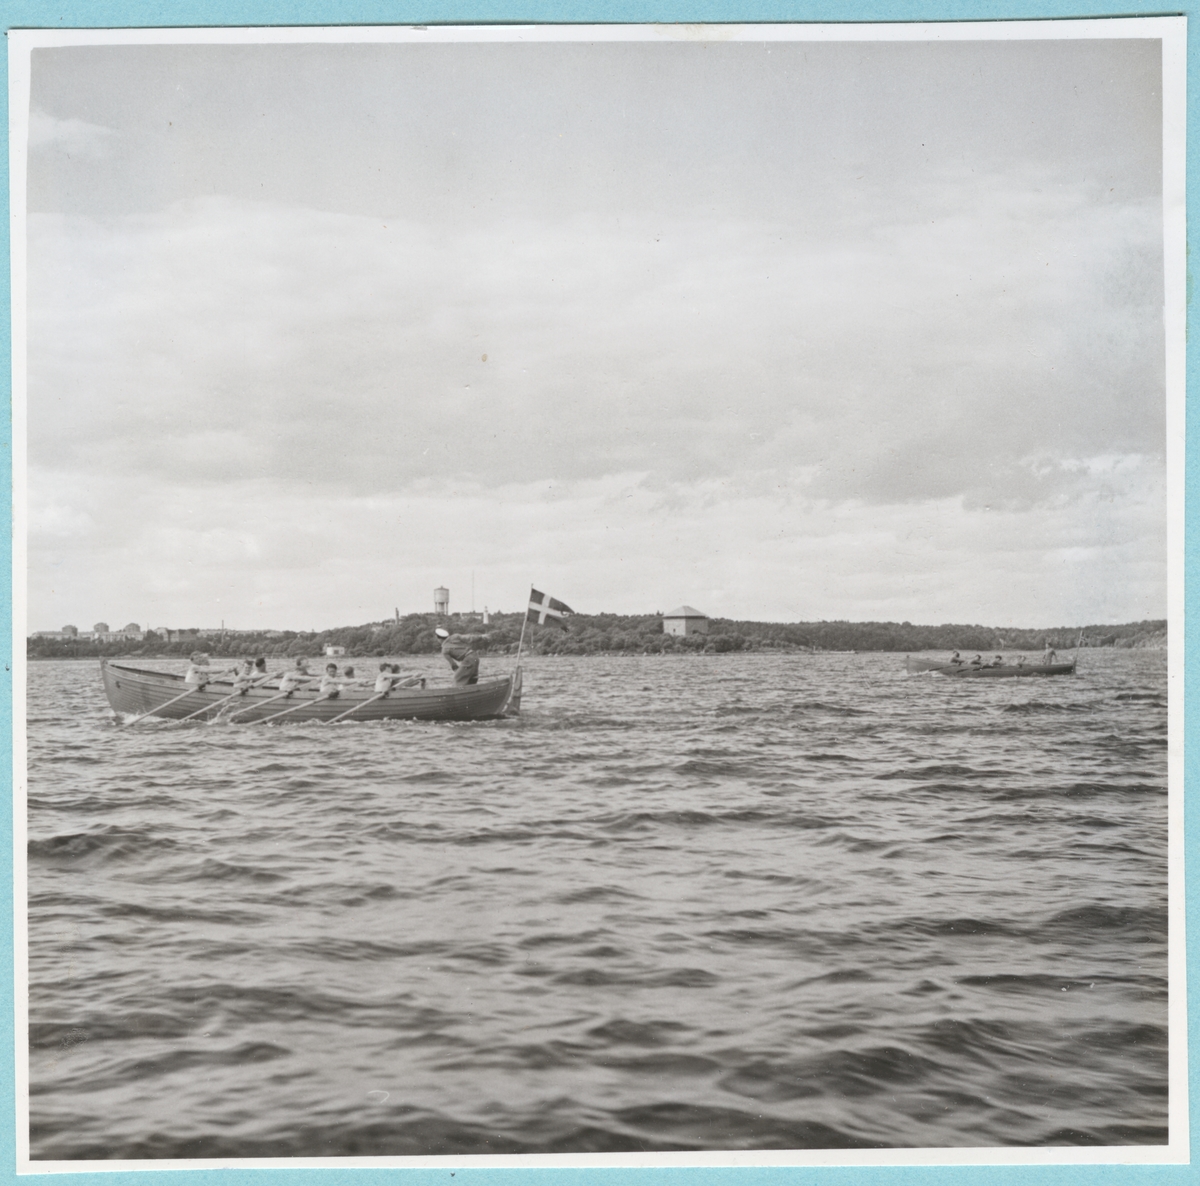 Roddtävling mellan Danska, Norska och Svenska kadettlagen. Två båtar syns ro fram över vattnet. I bakgrunden syns Mjölnareholmen med kruthuset, samt vattentornet på Vämö längre bort. Från Danska och Norska örlogsbesöken den 29/6 - 4/7 1951.